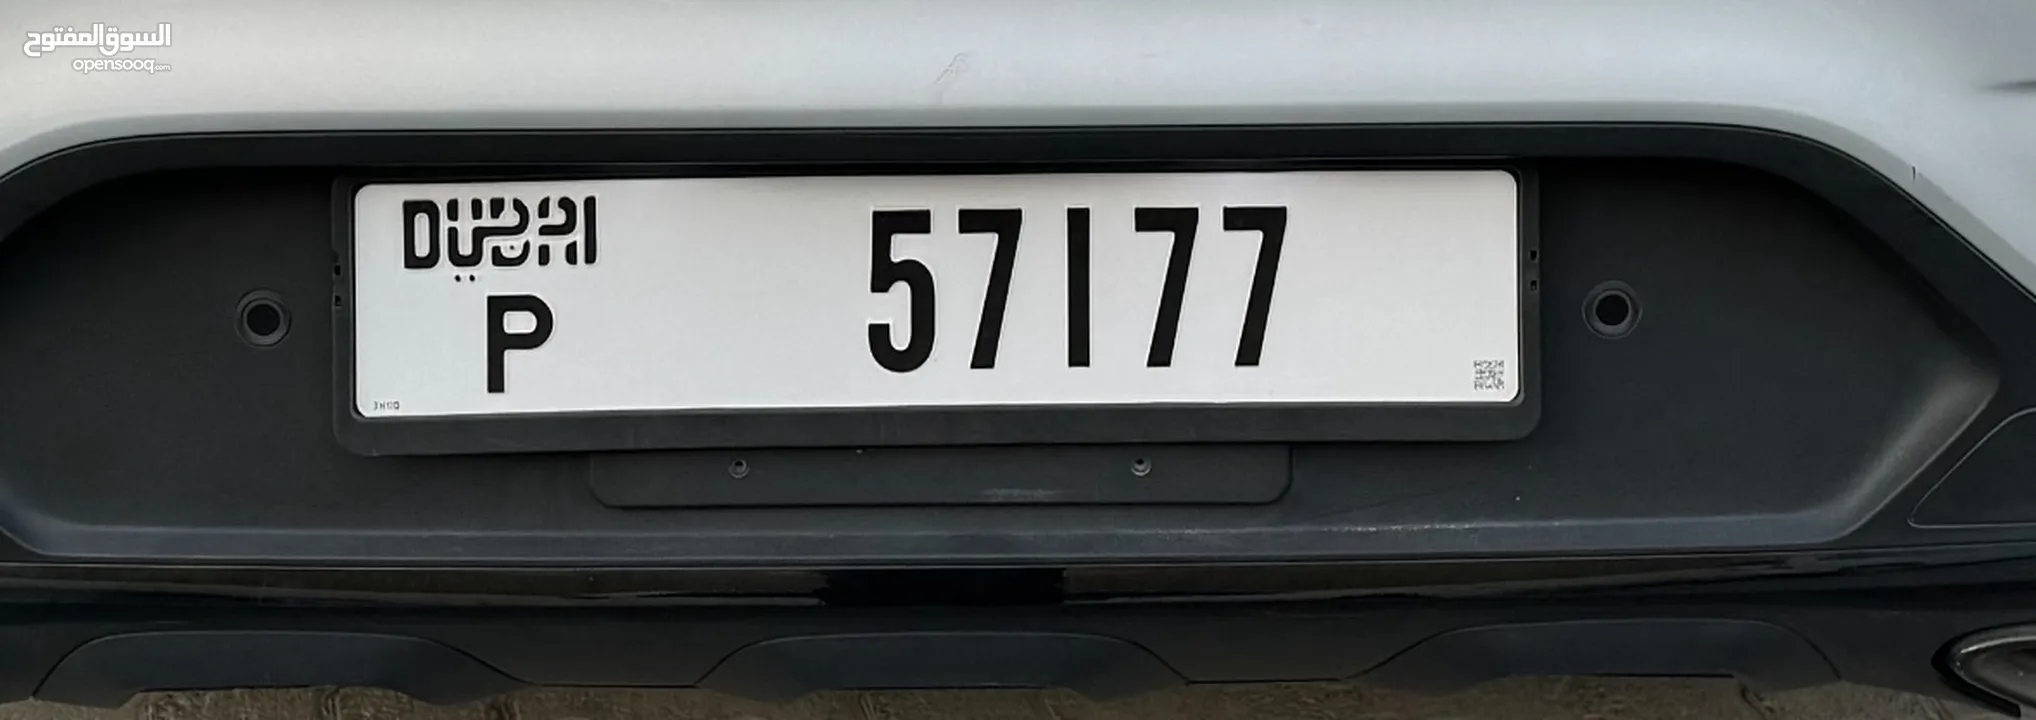 Dubai VIP plate number